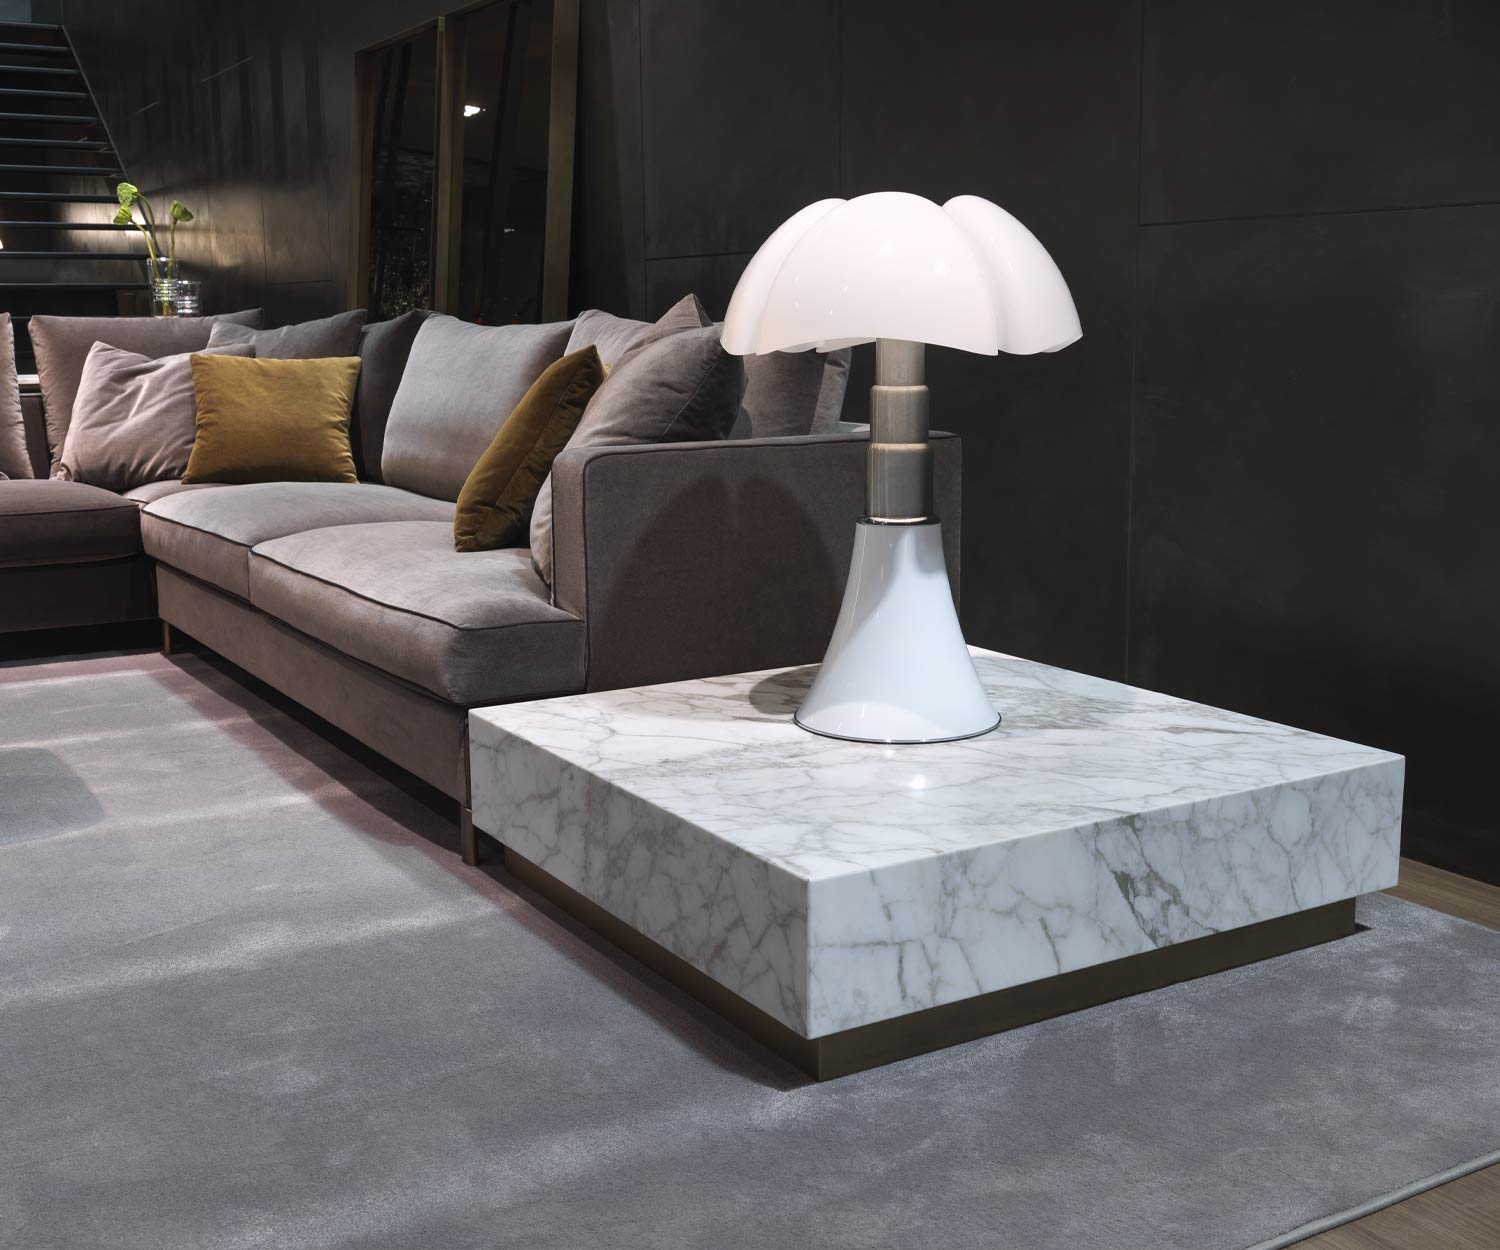 Table basse en marbre blanc Thor de Marelli à Carrare près du canapé dans le salon